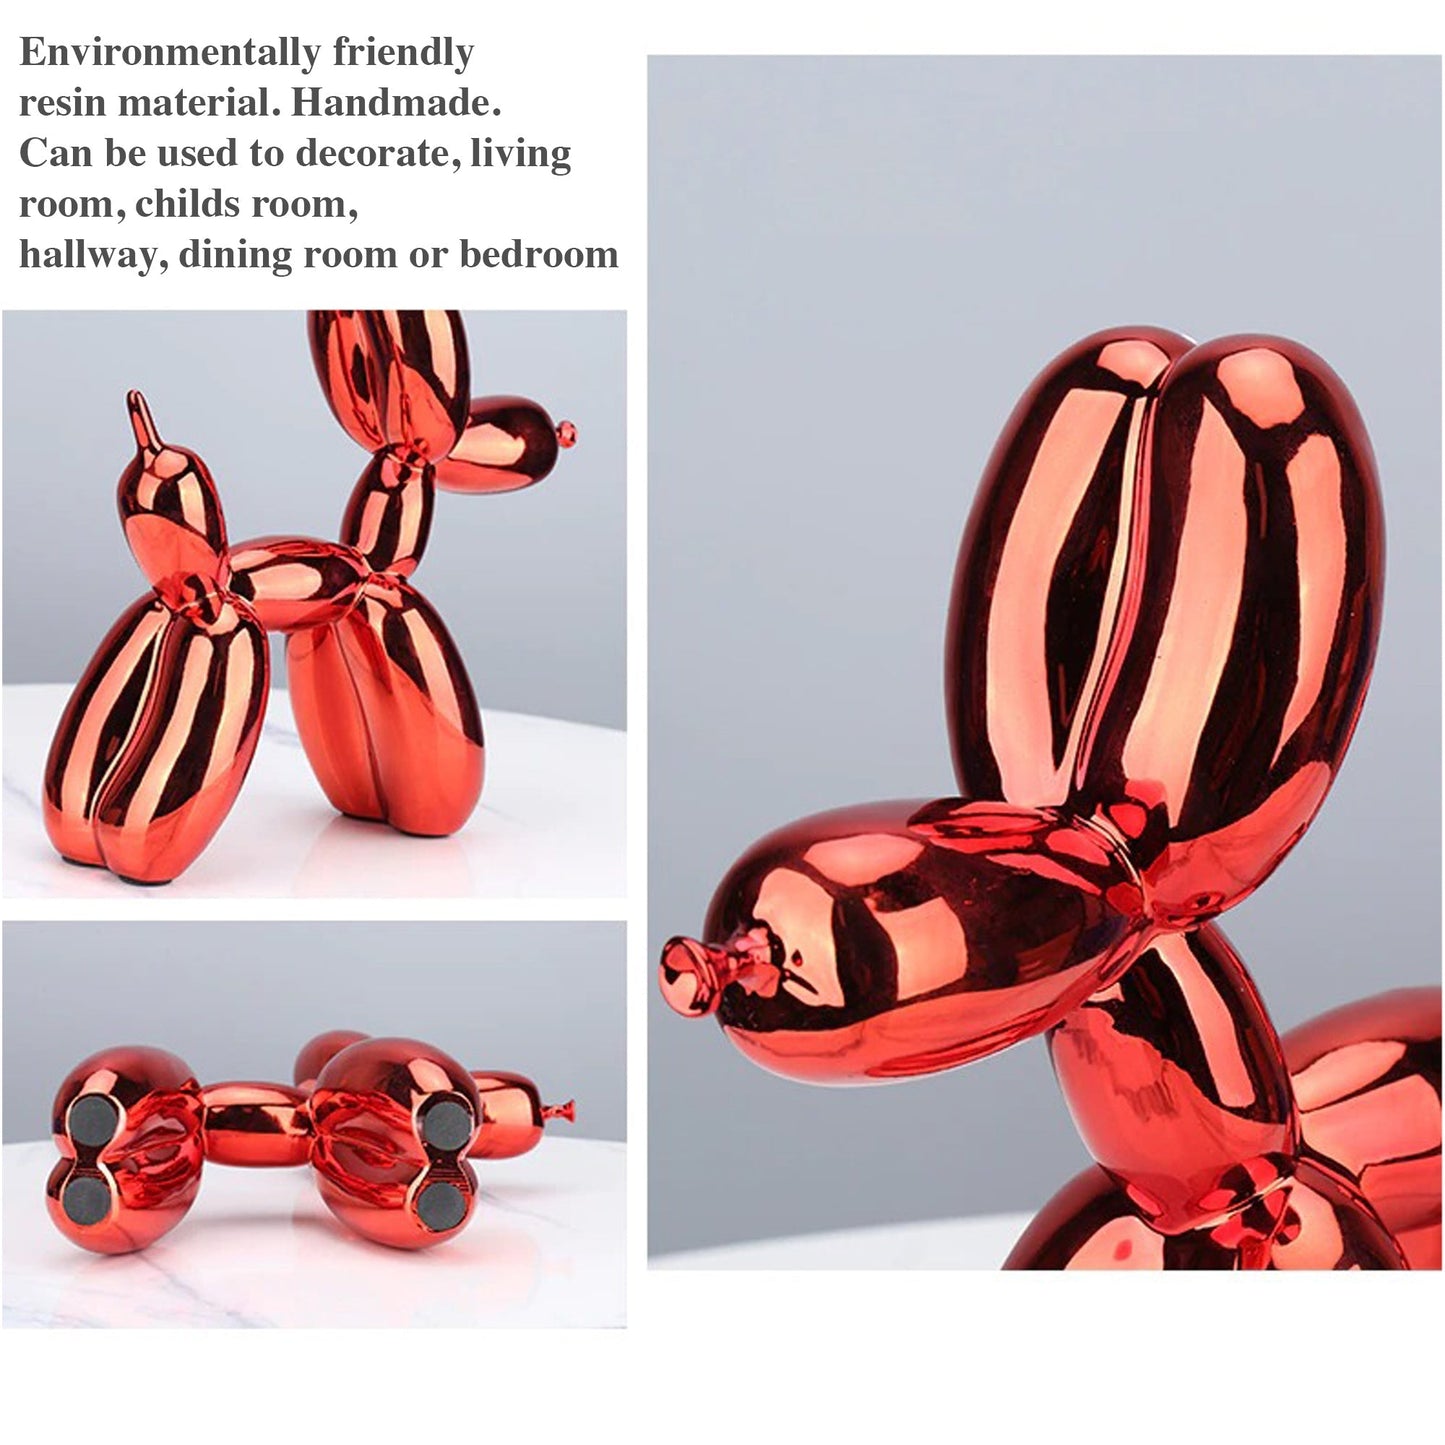 Electroplated Ballon Dog Skulpturen - 2 Faarwen